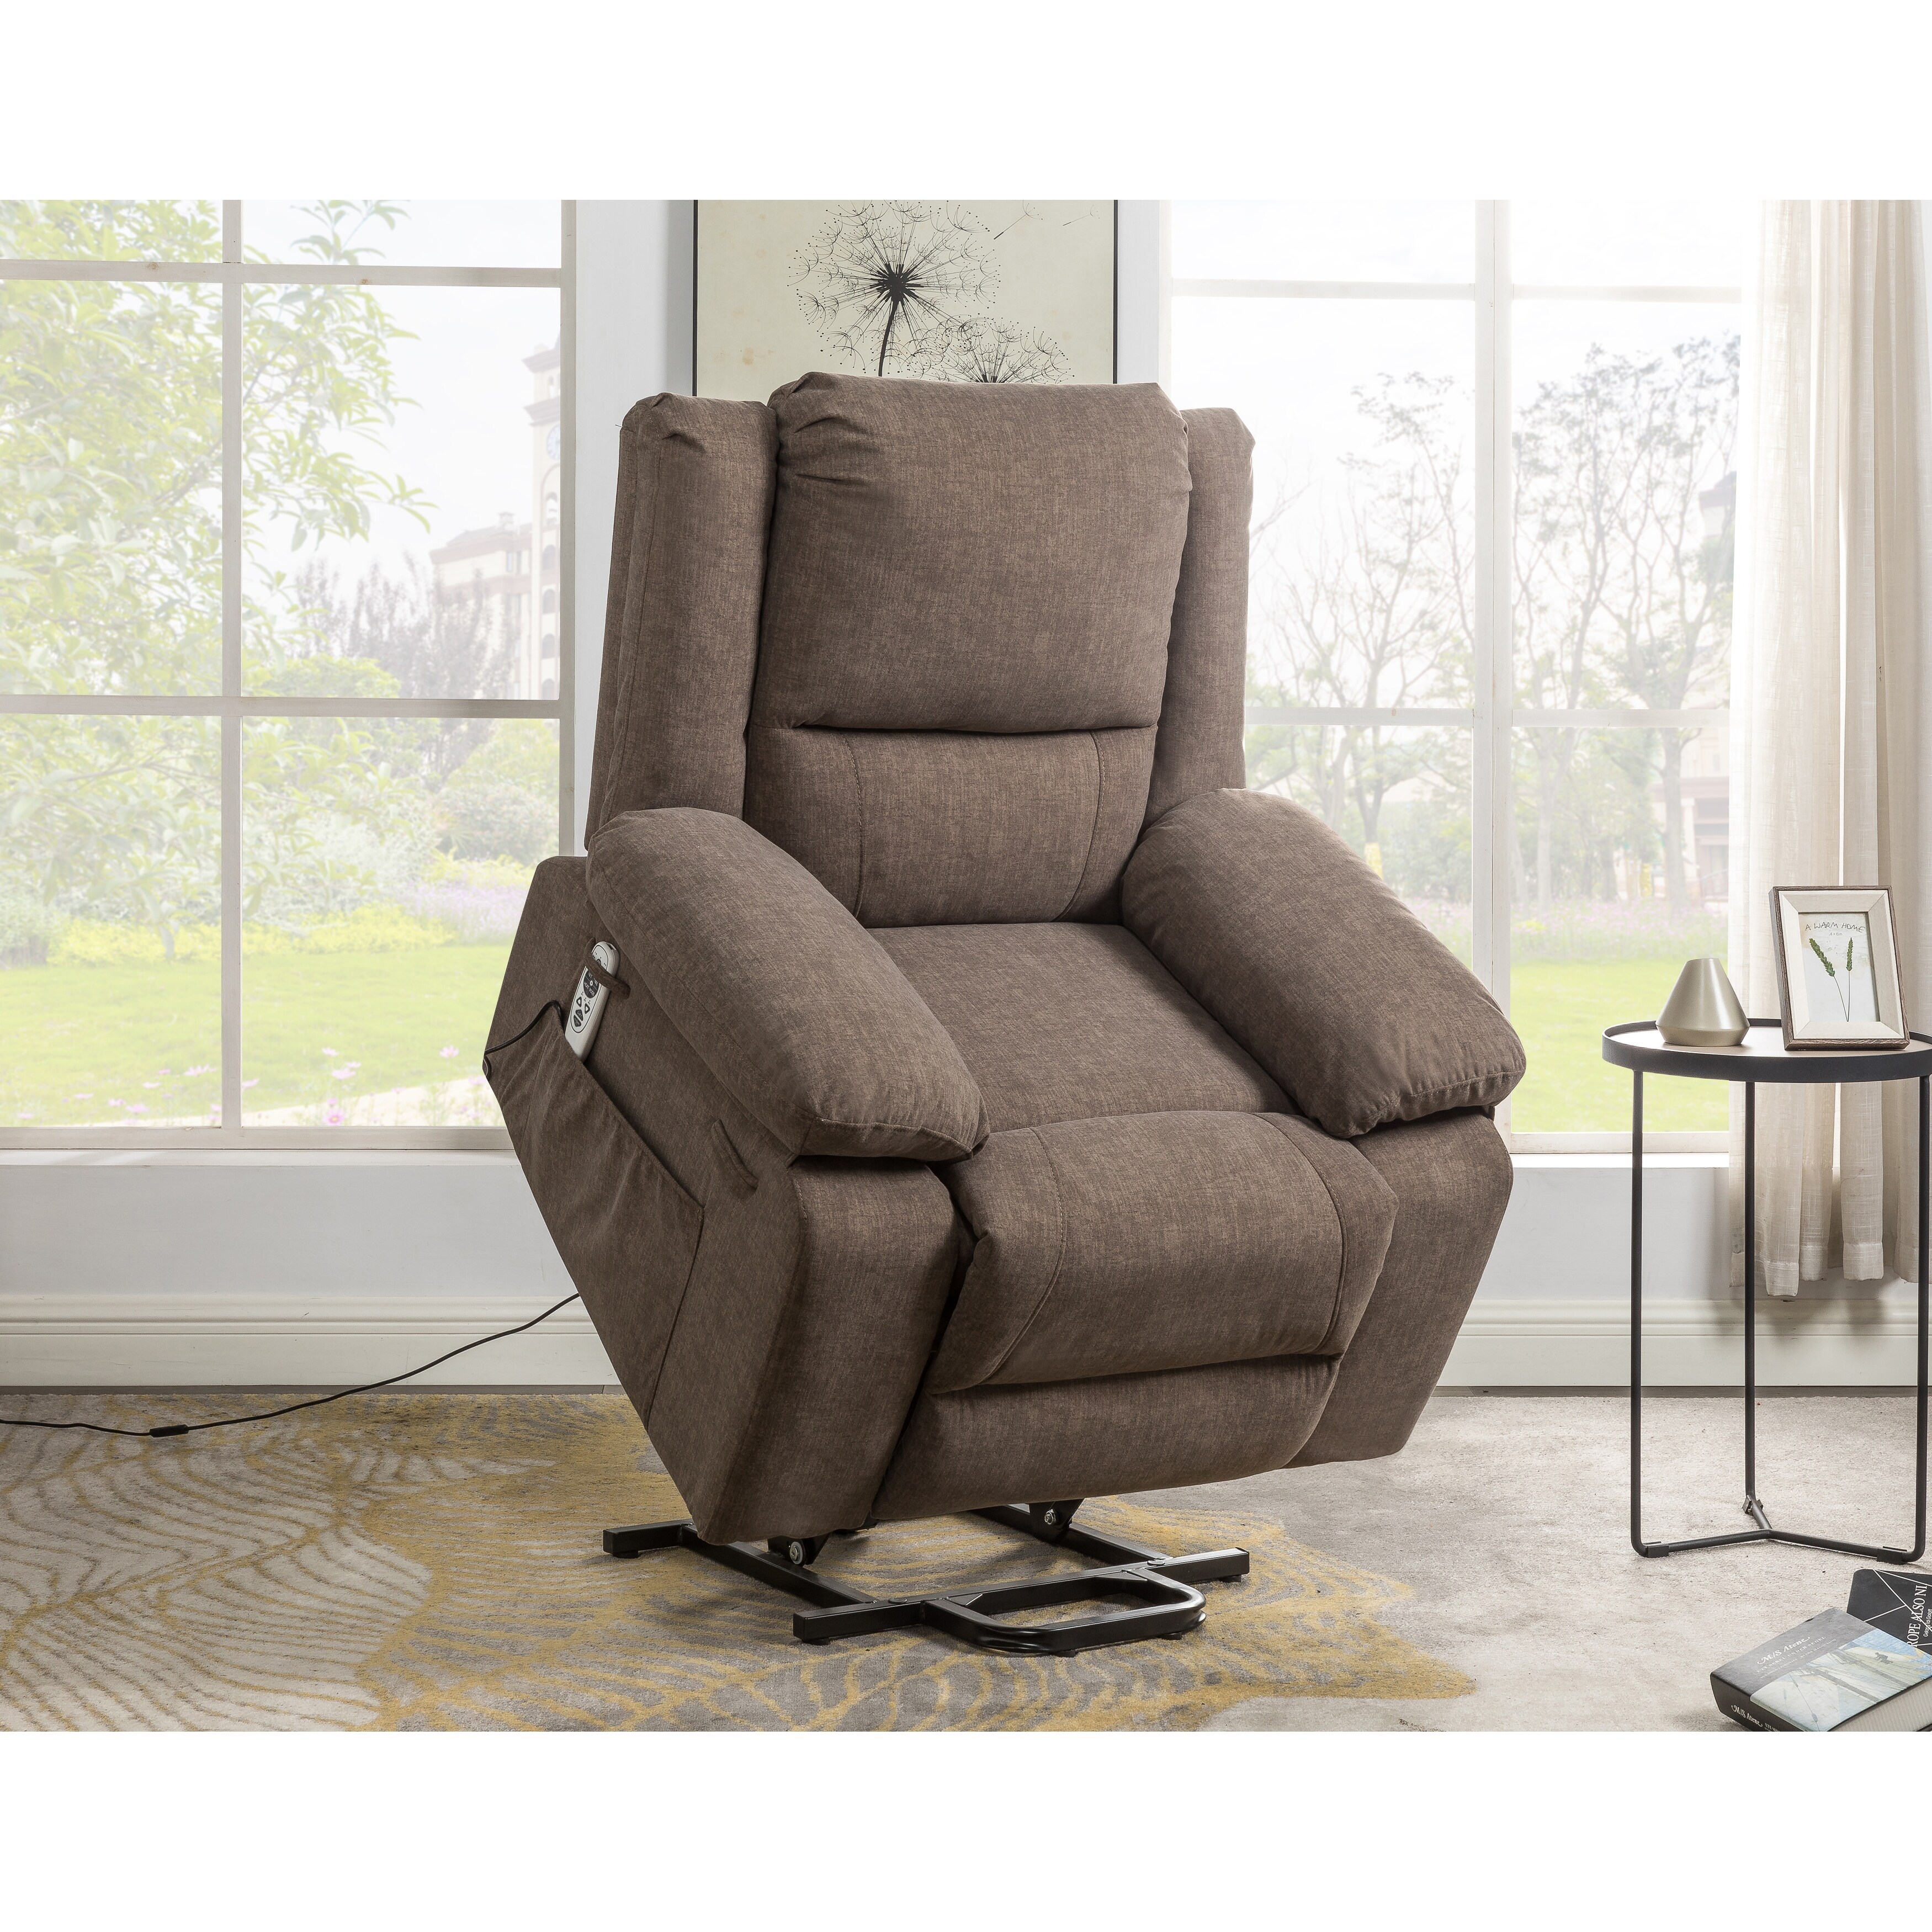 Brown Velvet Power Lift Recliner Chair, 8 Massage Points, Lumbar